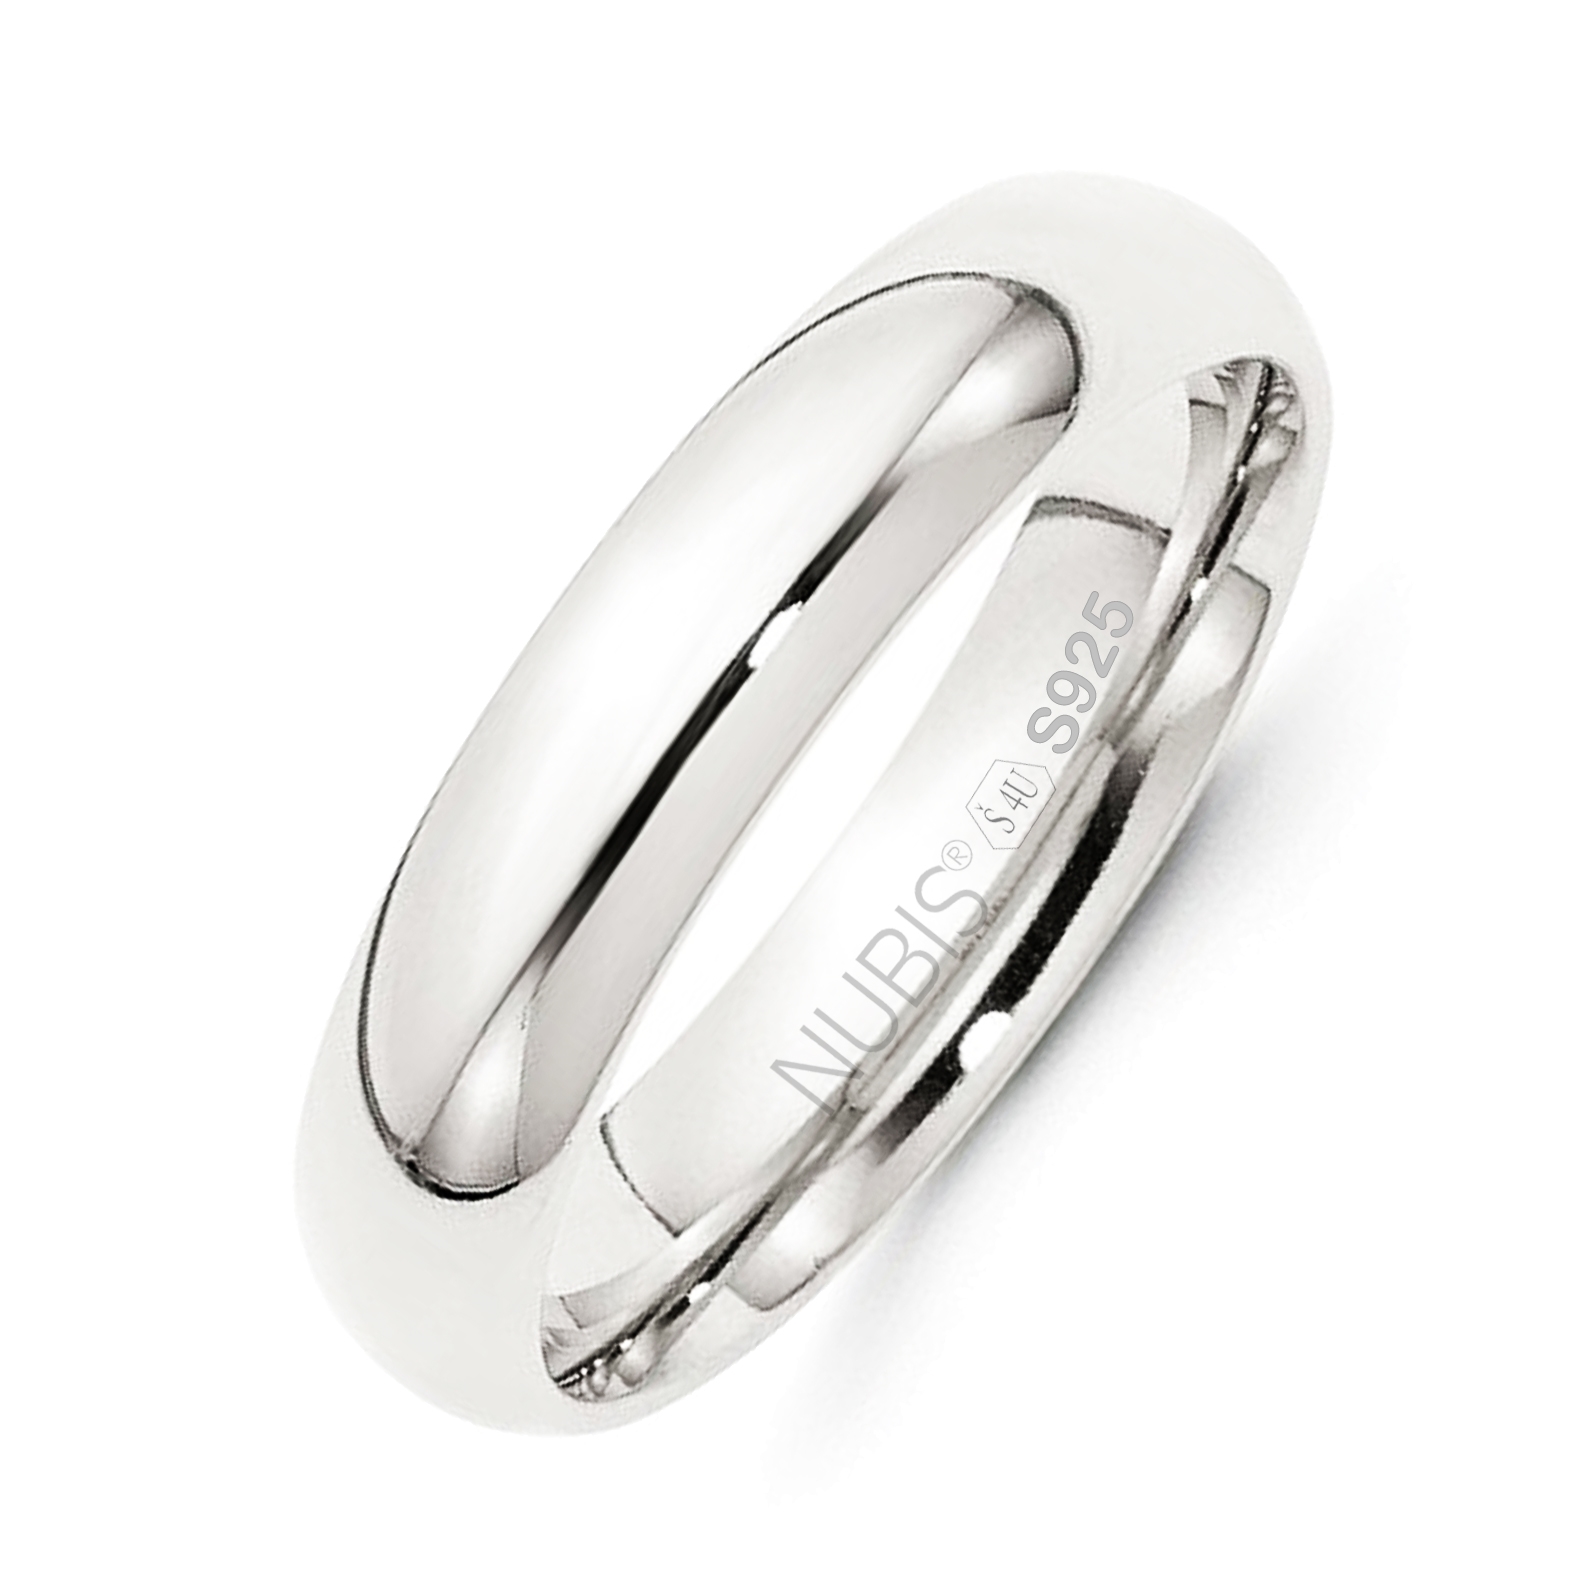 NUBIS® NB101-5 Stříbrný snubní prsten šíře 5 mm - velikost 59 - NB101-5-59